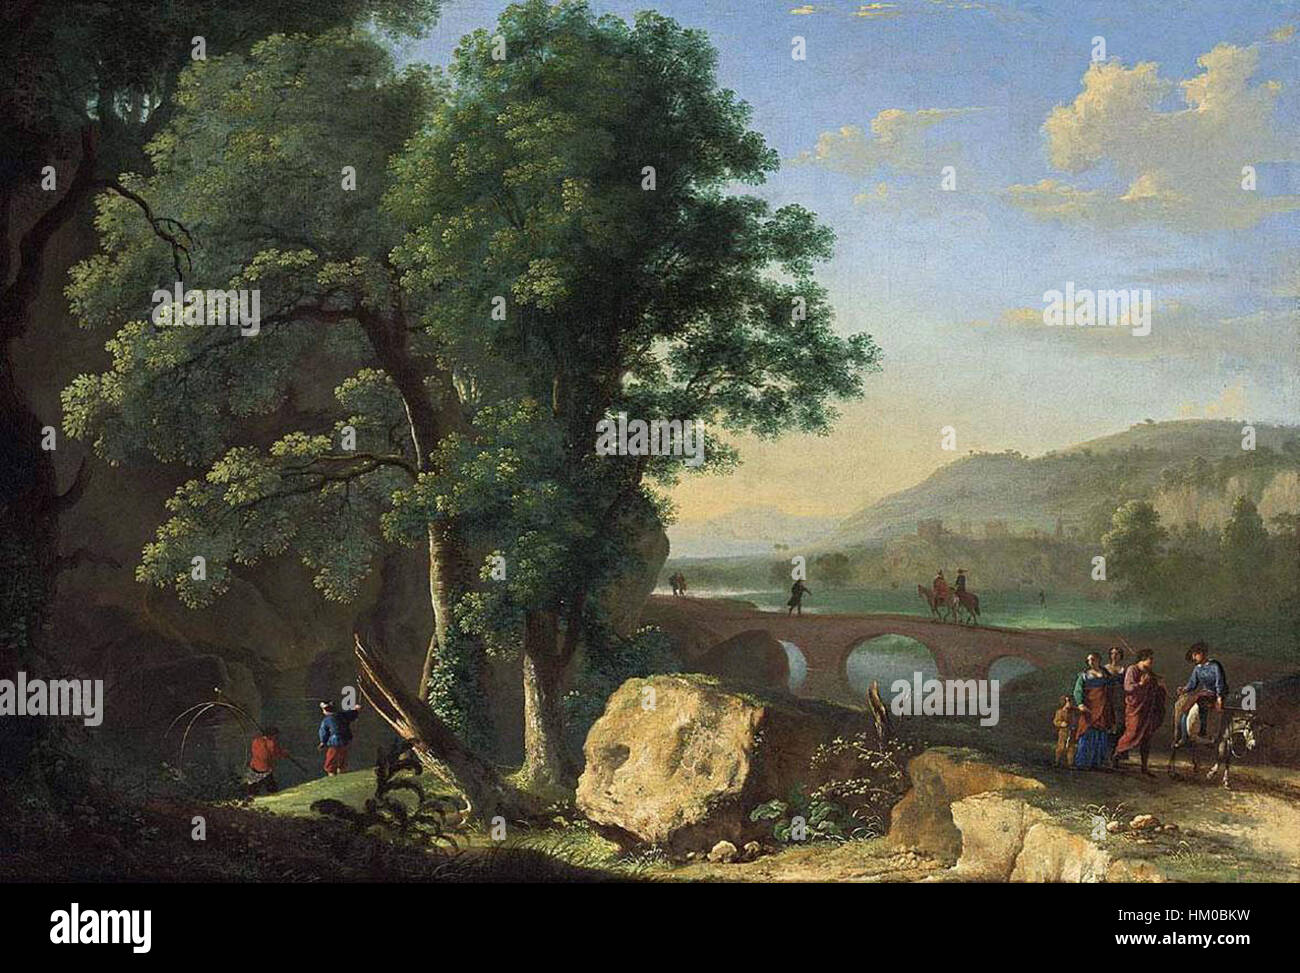 Картина 16. Герман Ван Сваневельт итальянский пейзаж с мостом. Херман Сваневельт. Итальянские пейзажисты 19 века. Итальянский пейзажист 15 века.